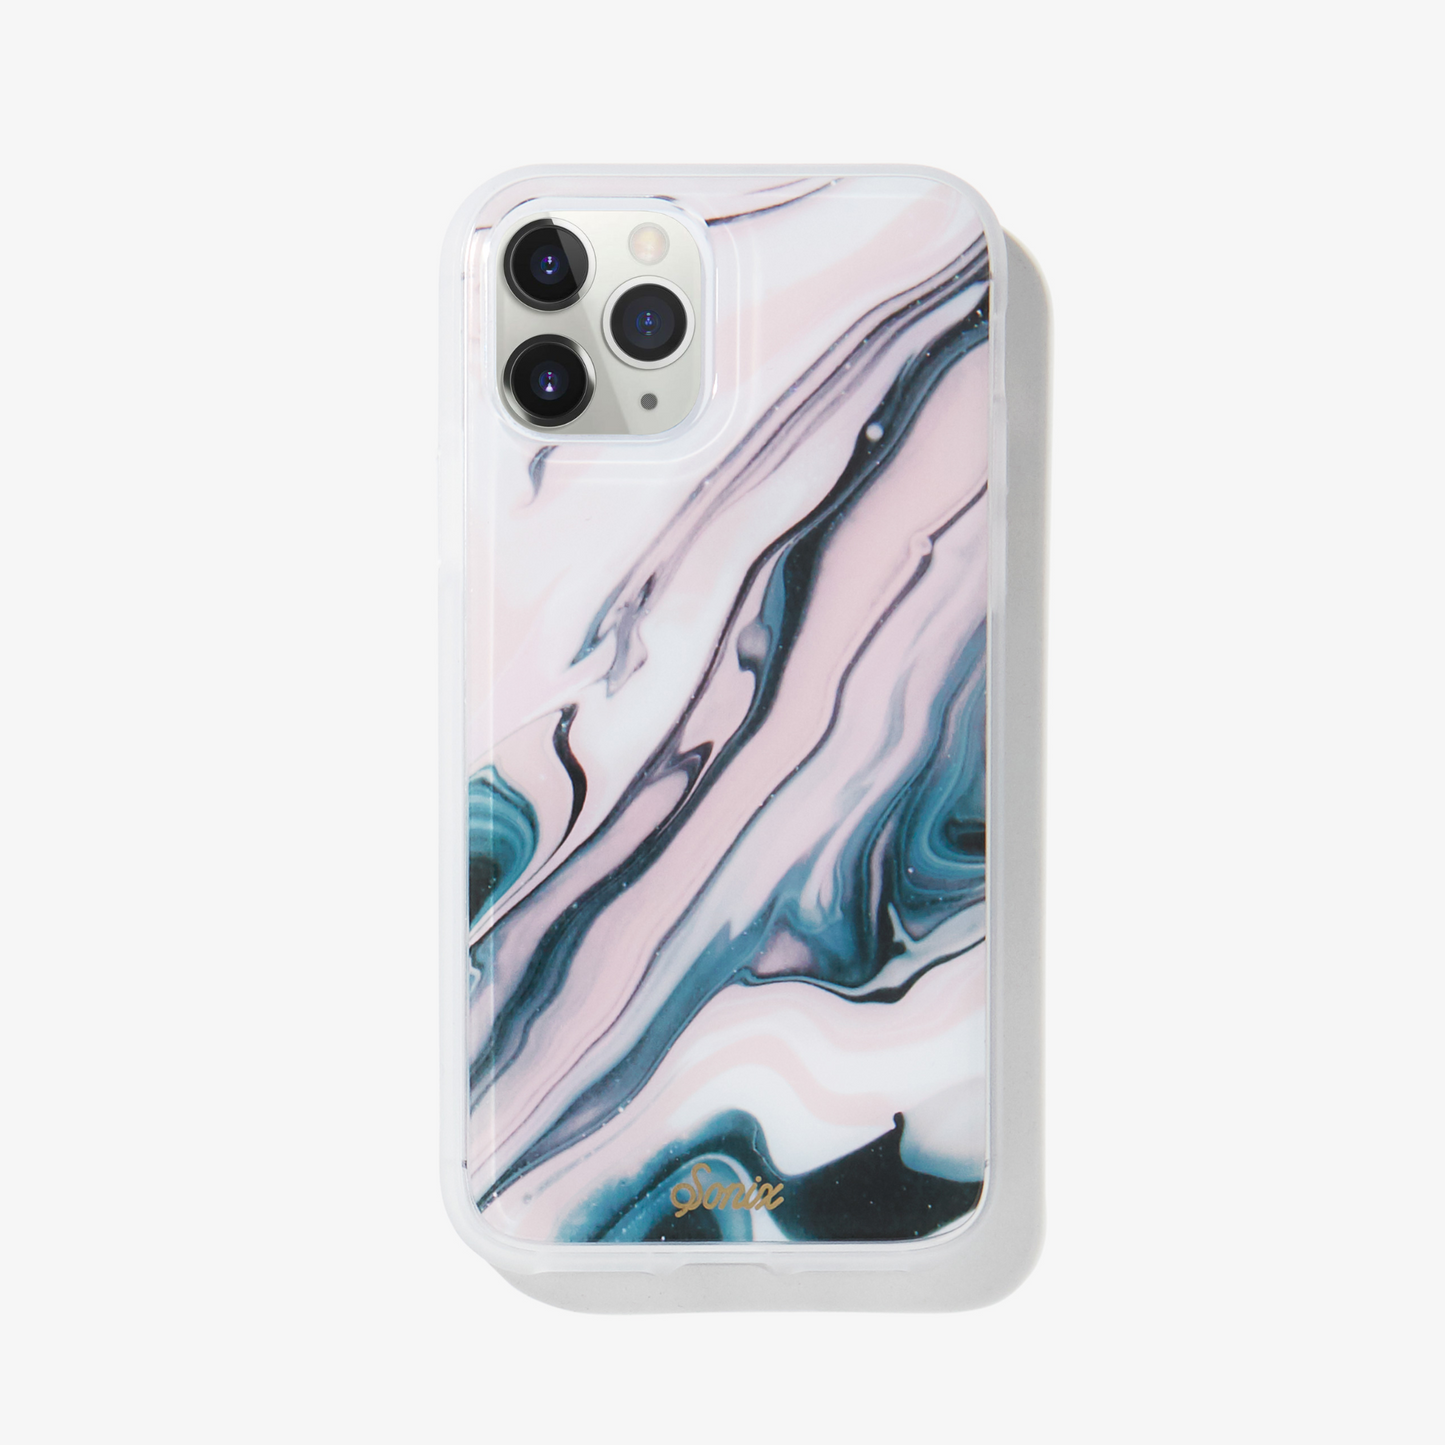 Quartz iphone case featuring pink marble quartz design on white iphone 11 pro